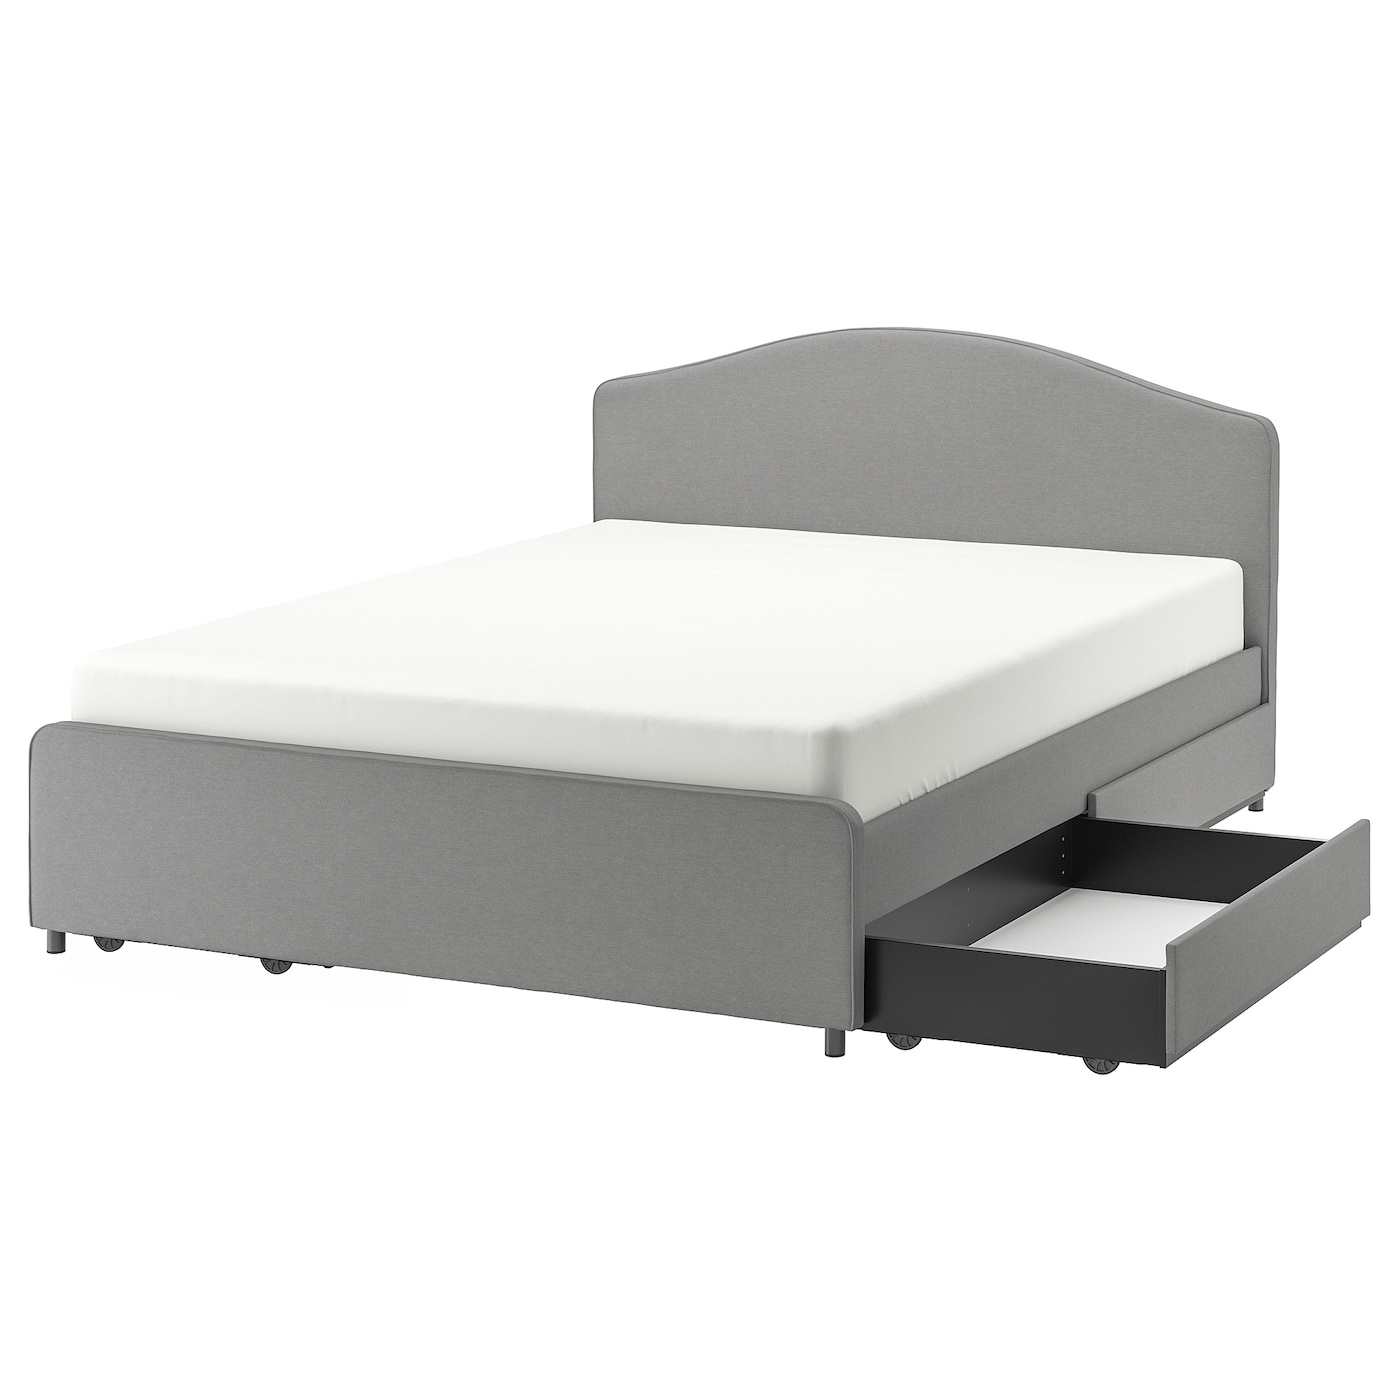 Основание для двуспальной кровати - IKEA HAUGA, 200х160 см, серый, ХАУГА ИКЕА